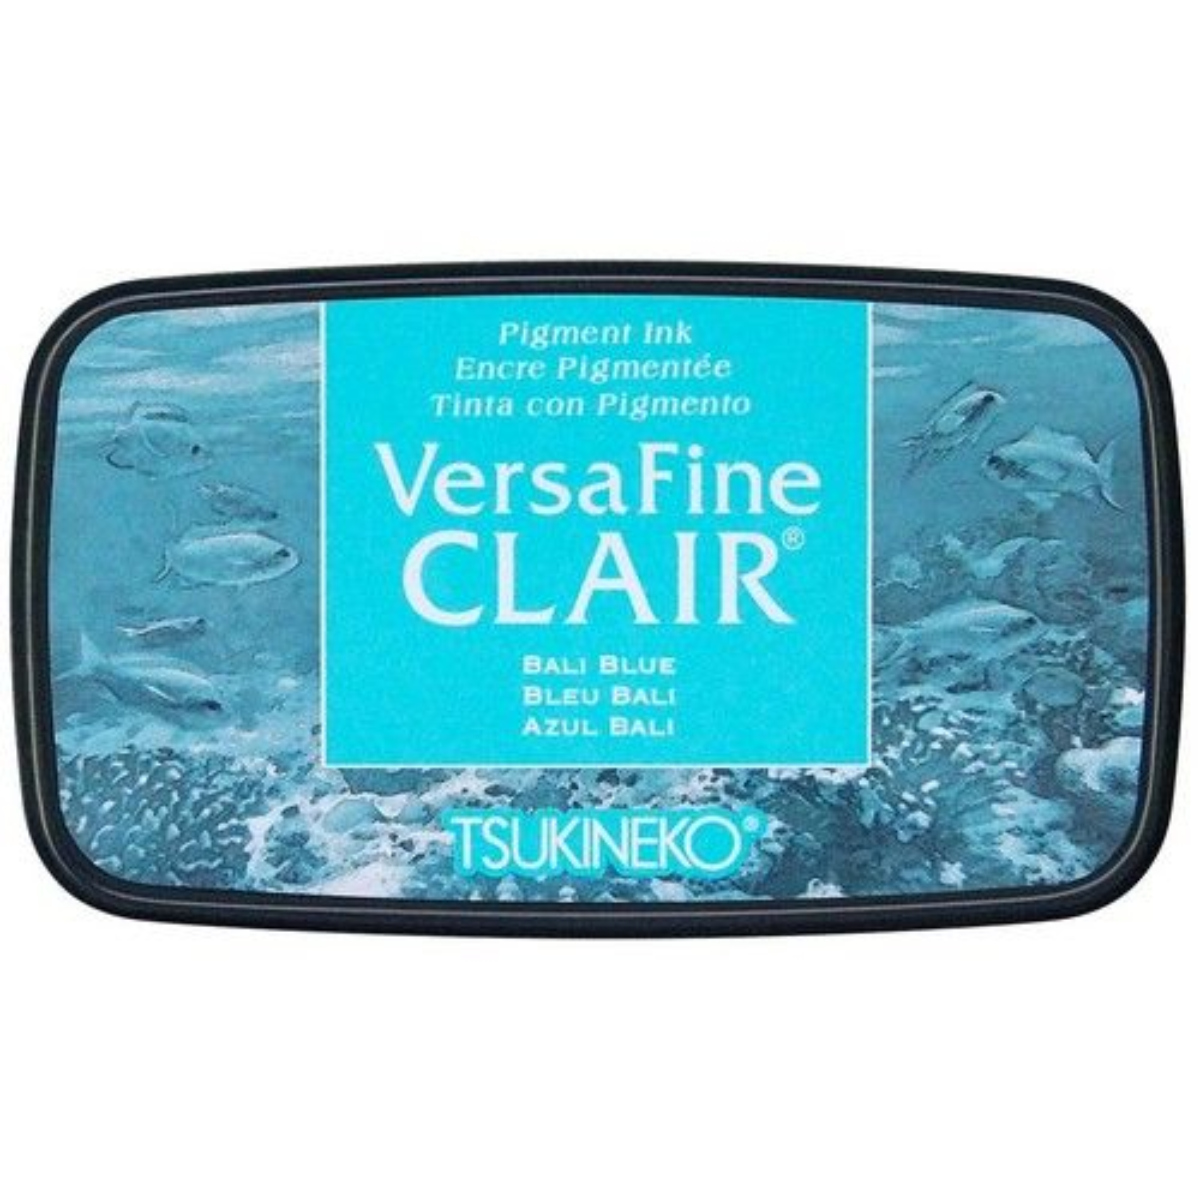 VersaFine Clair – Bali Blue